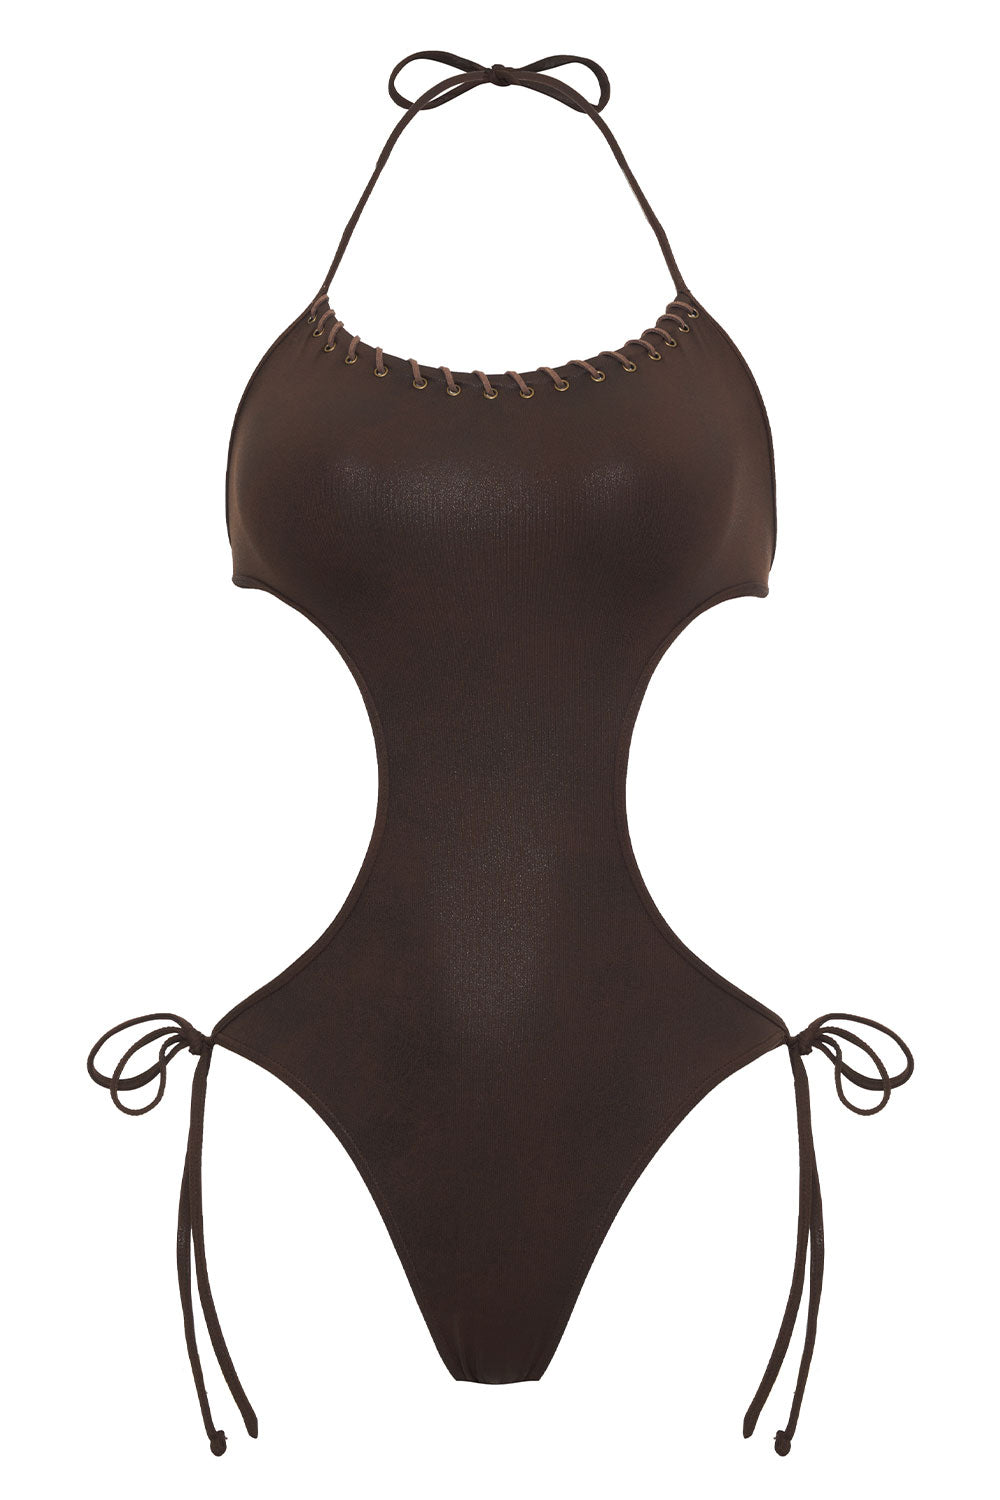 Celeste Leather Look Monokini One Piece Swimsuit - Cocoa